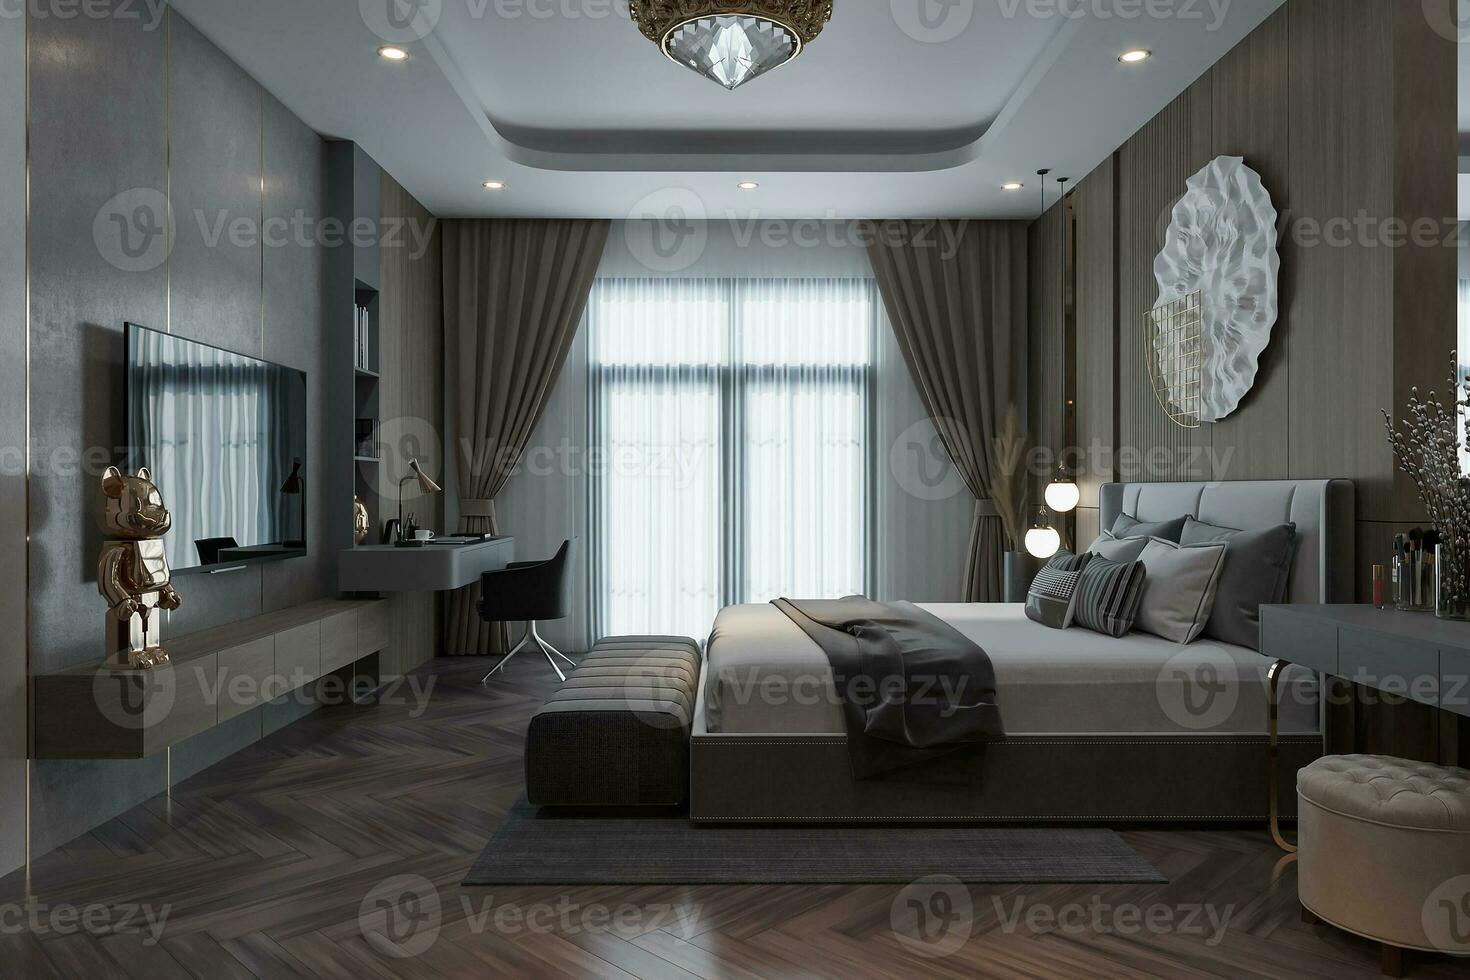 das Innere Design von modern Stil Schlafzimmer entlang mit luxuriös Möbel, groß Fenster zum das modern Lebensstil 3d Rendern foto